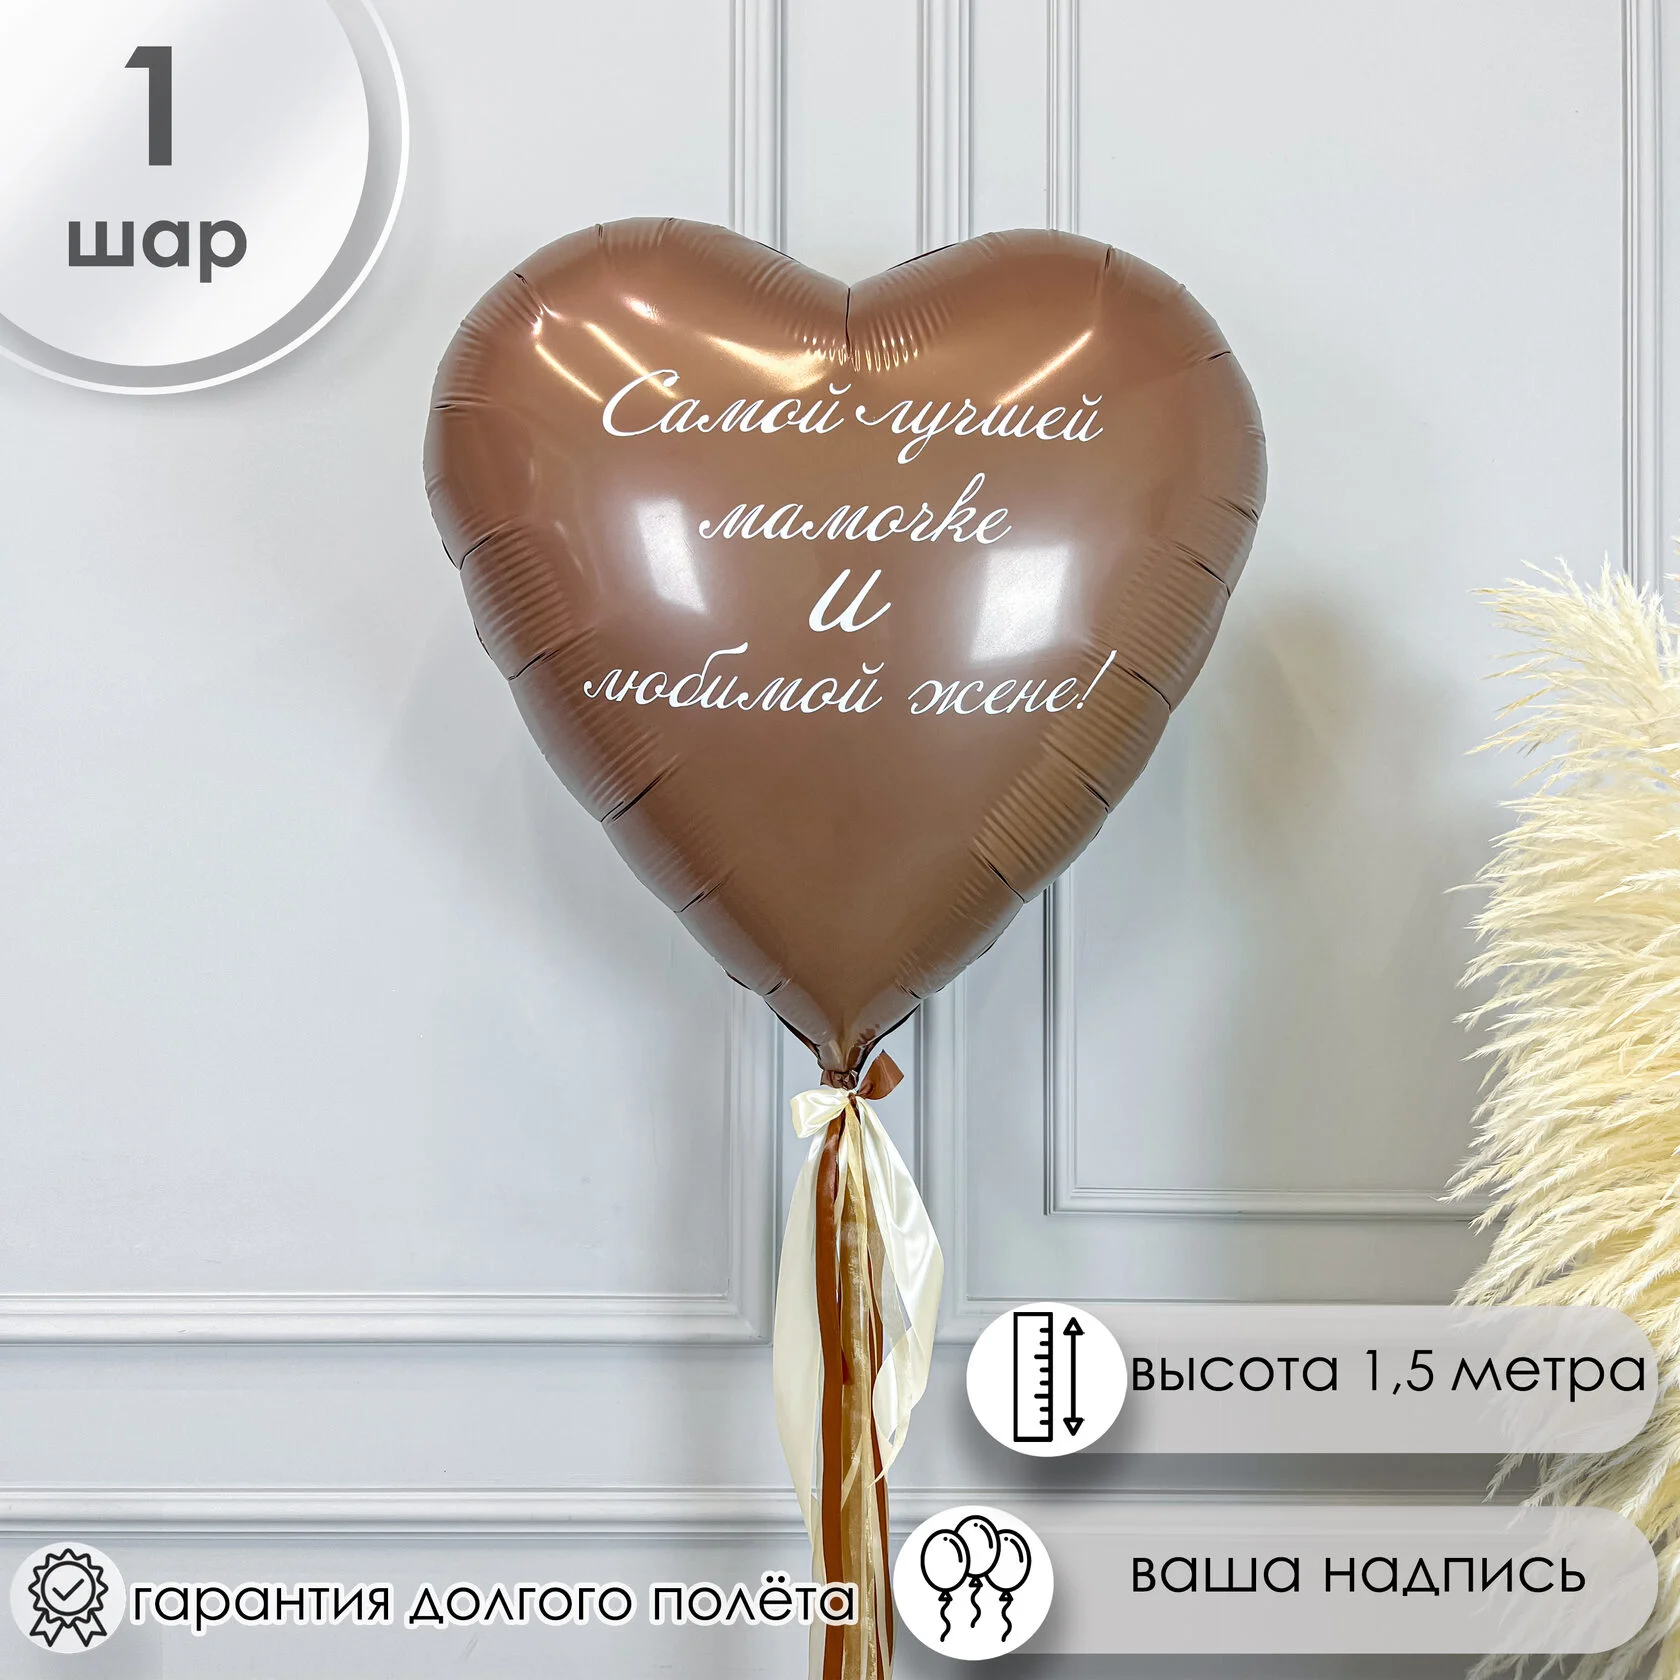 Надписи на шарах на день рождения, прикольные шарики с надписями на заказ в СПб, большой шар на ДР